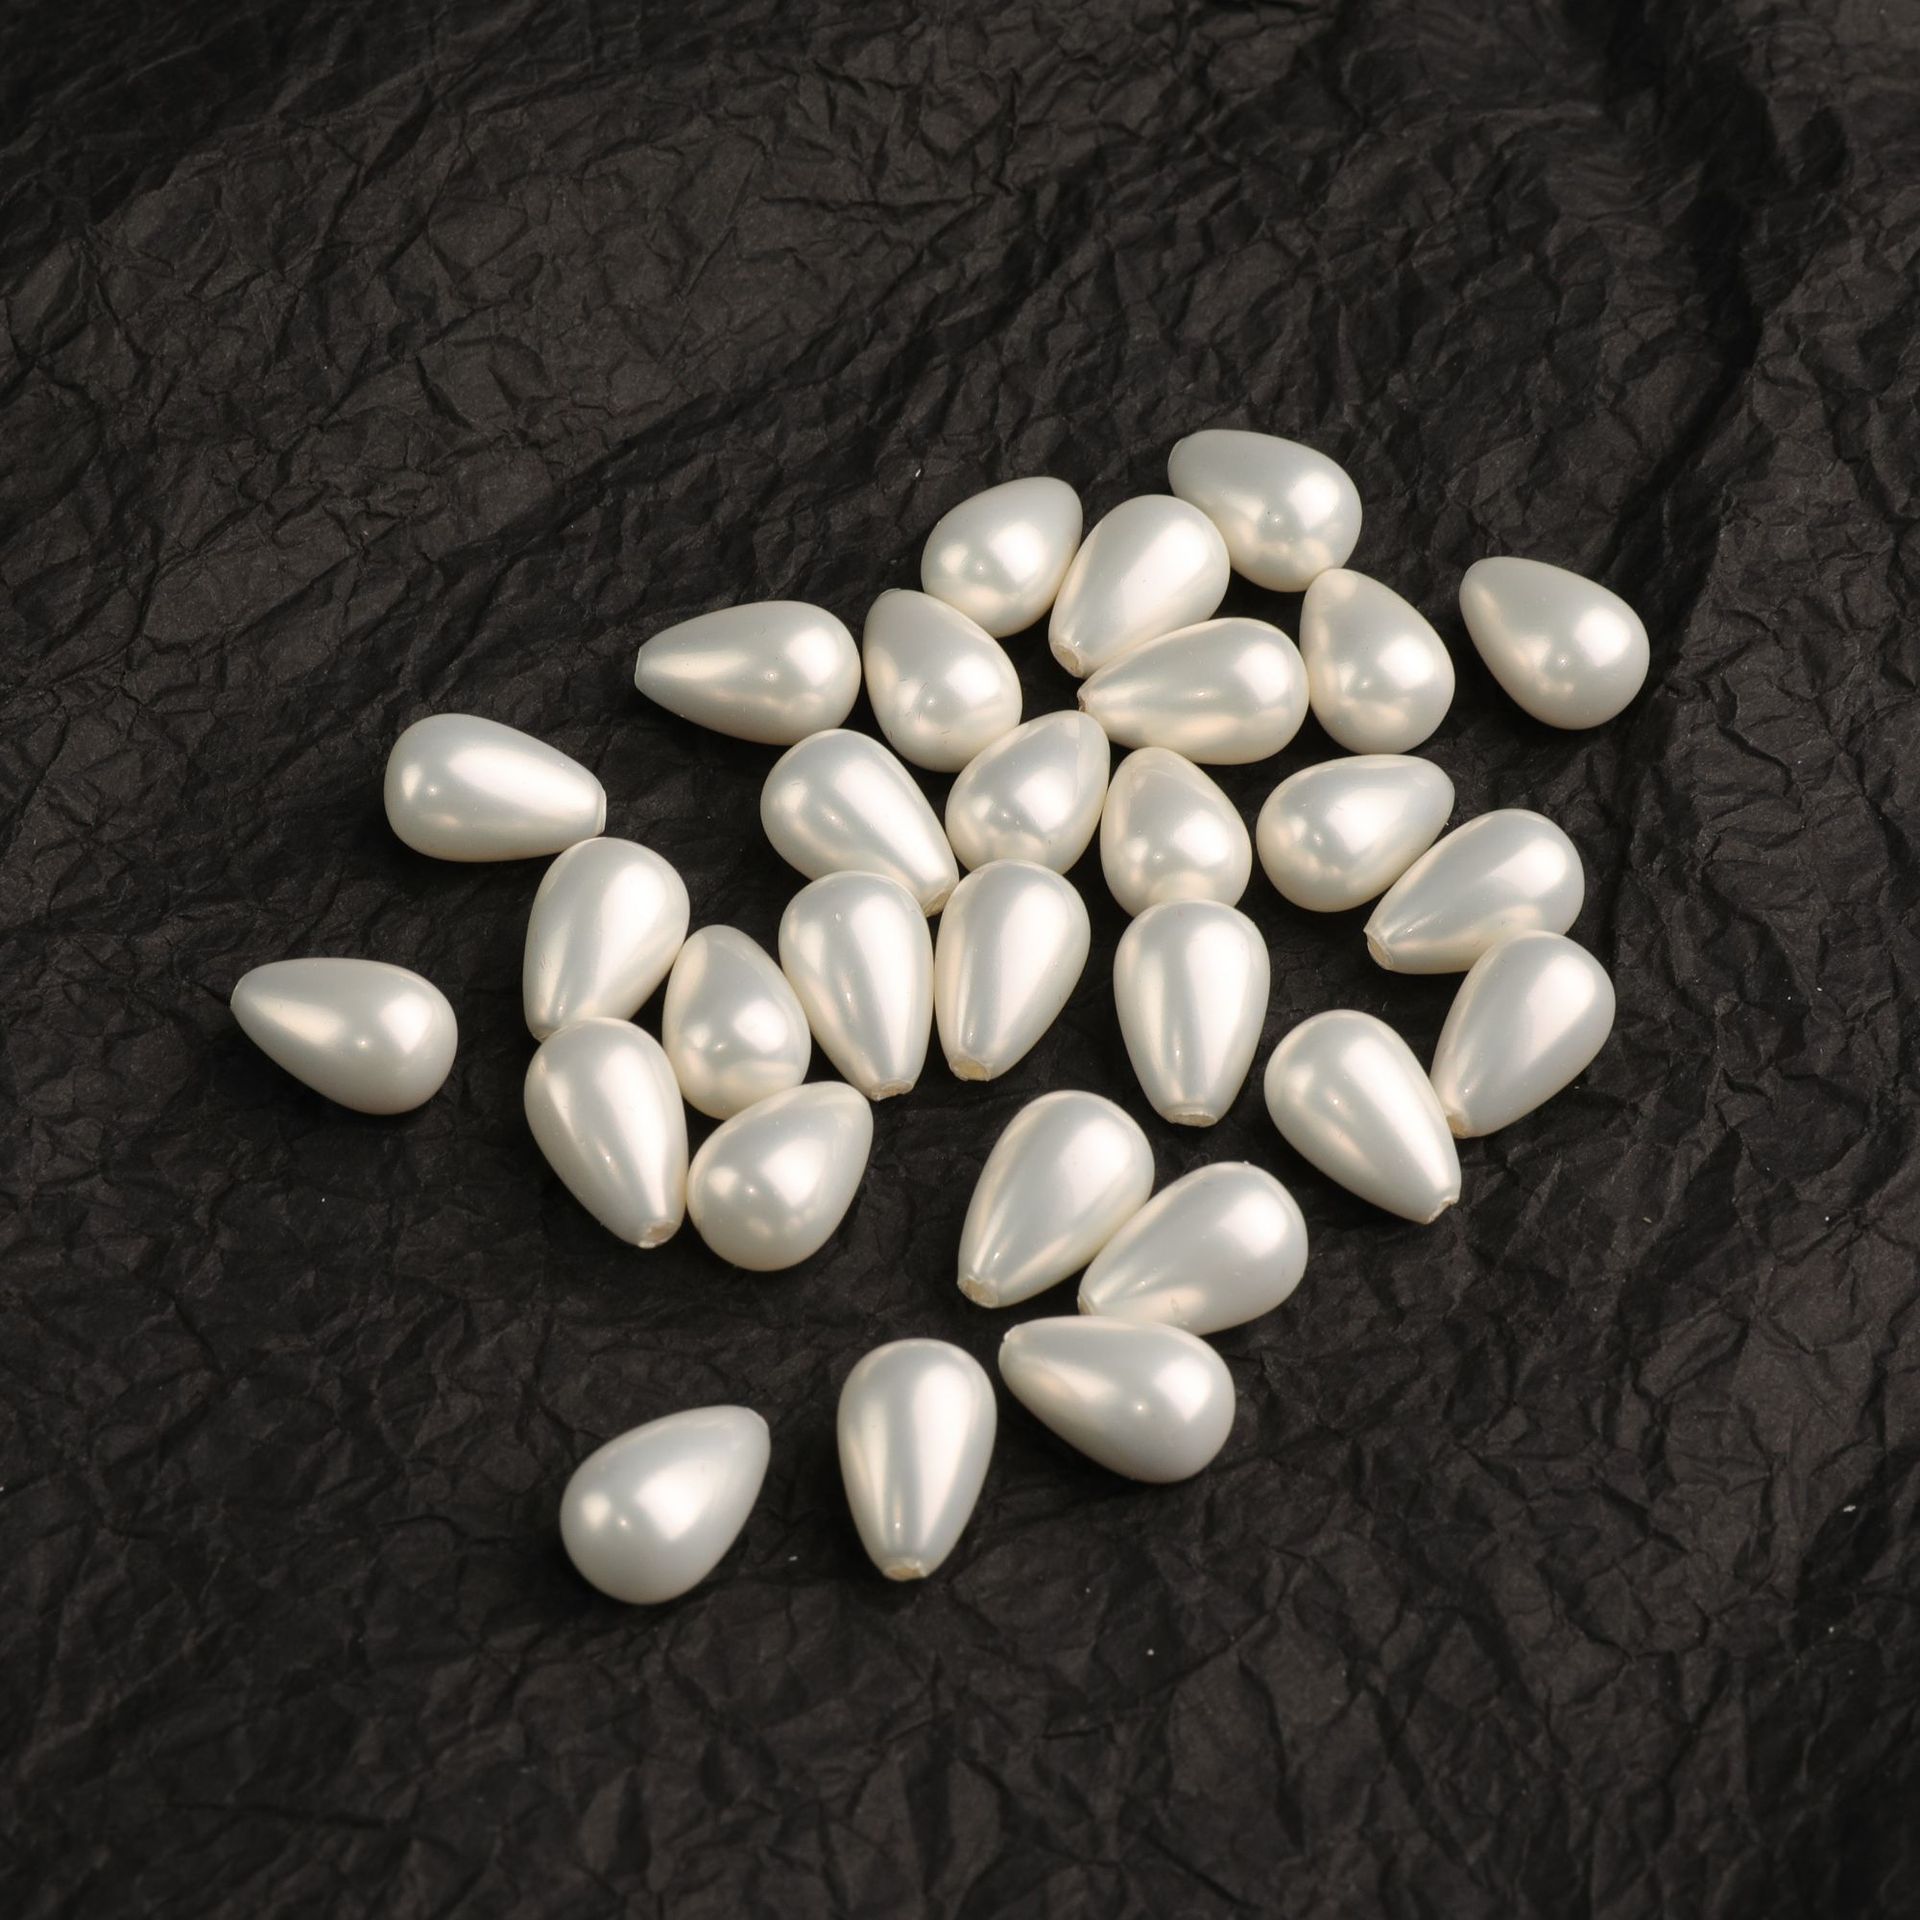 厂家直供大量贝壳珍珠 各色水滴形半孔贝珠 DIY饰品配件 散珠批发